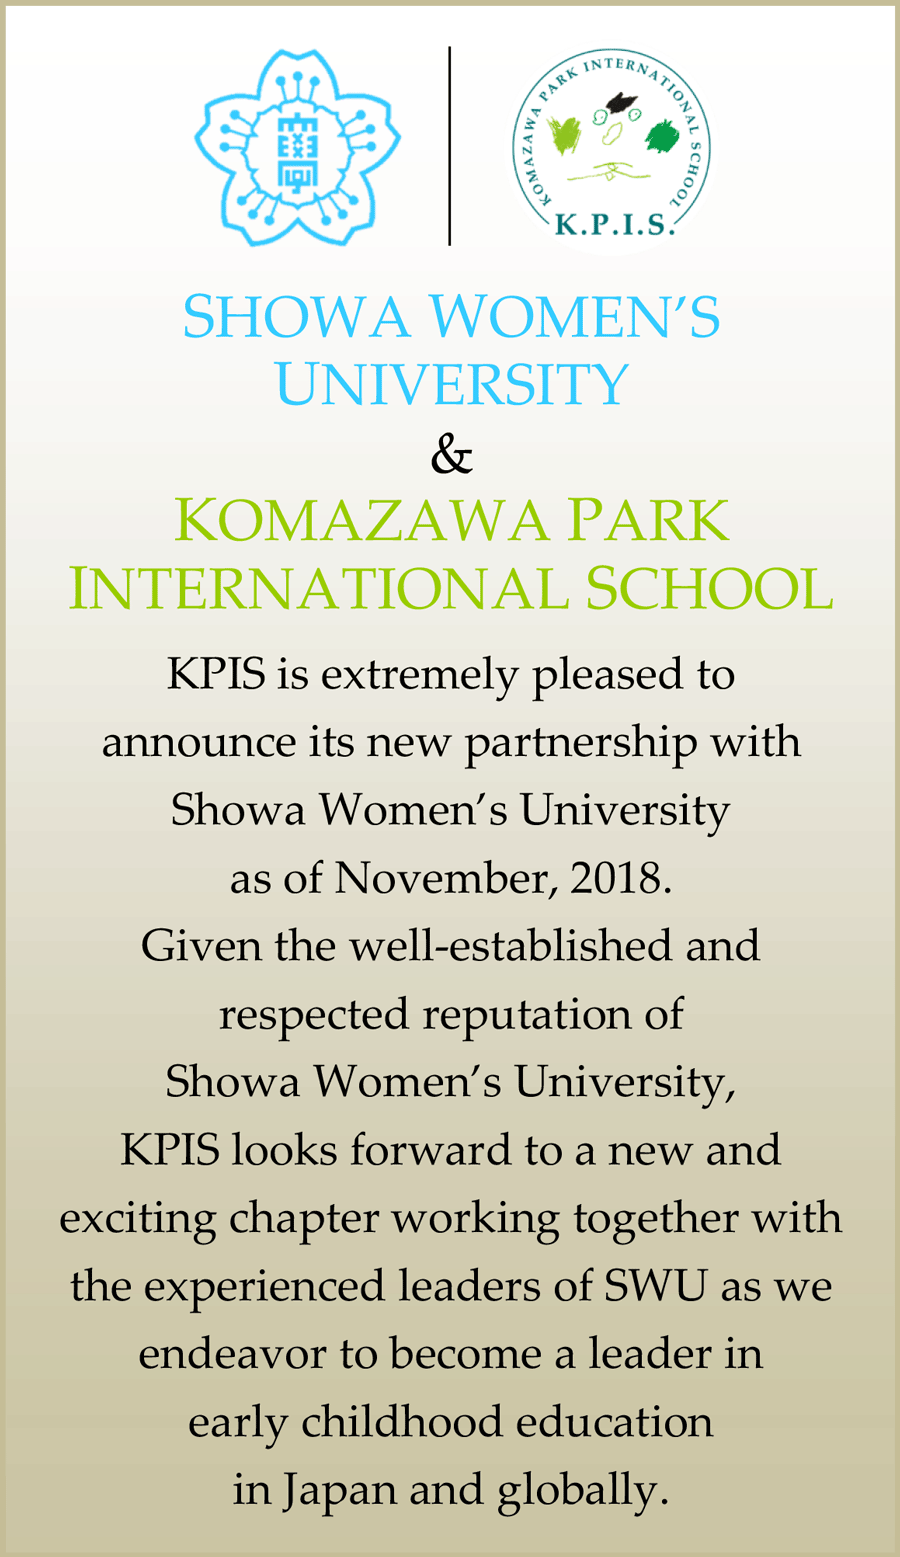 SHOWA WOMEN'S UNVERSITY and KPIS | KOMAZAWA PARK INTERNATIONAL SCHOOL